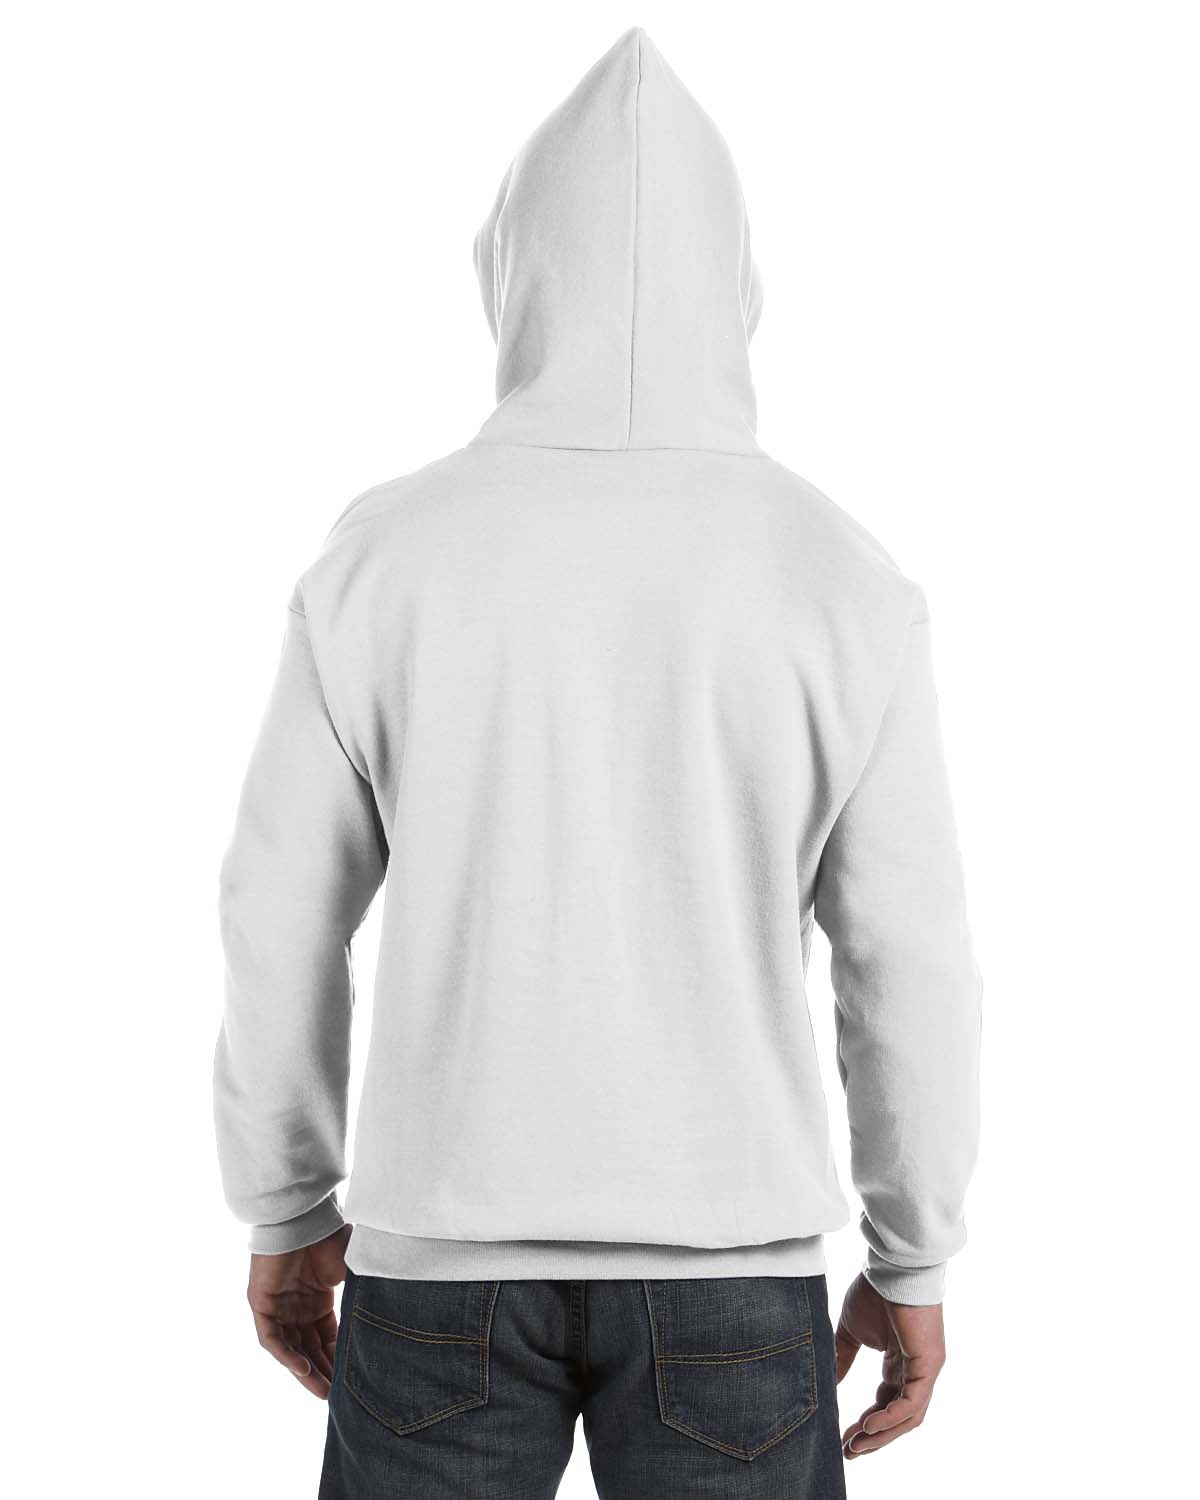 'Hanes P170 Comfortblend & Pullover Hoodie Sweatshirt'